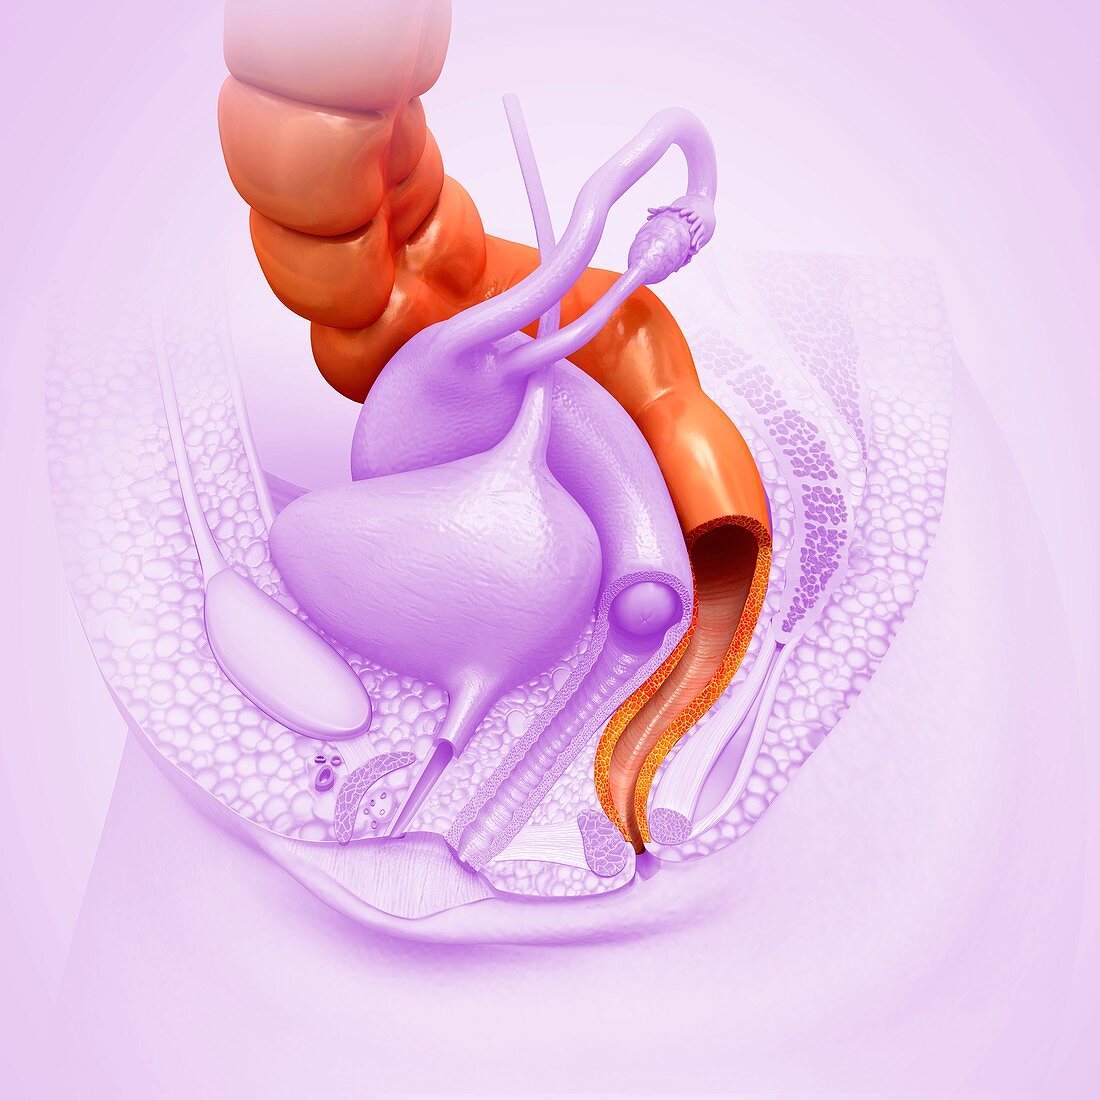 Female rectum, illustration